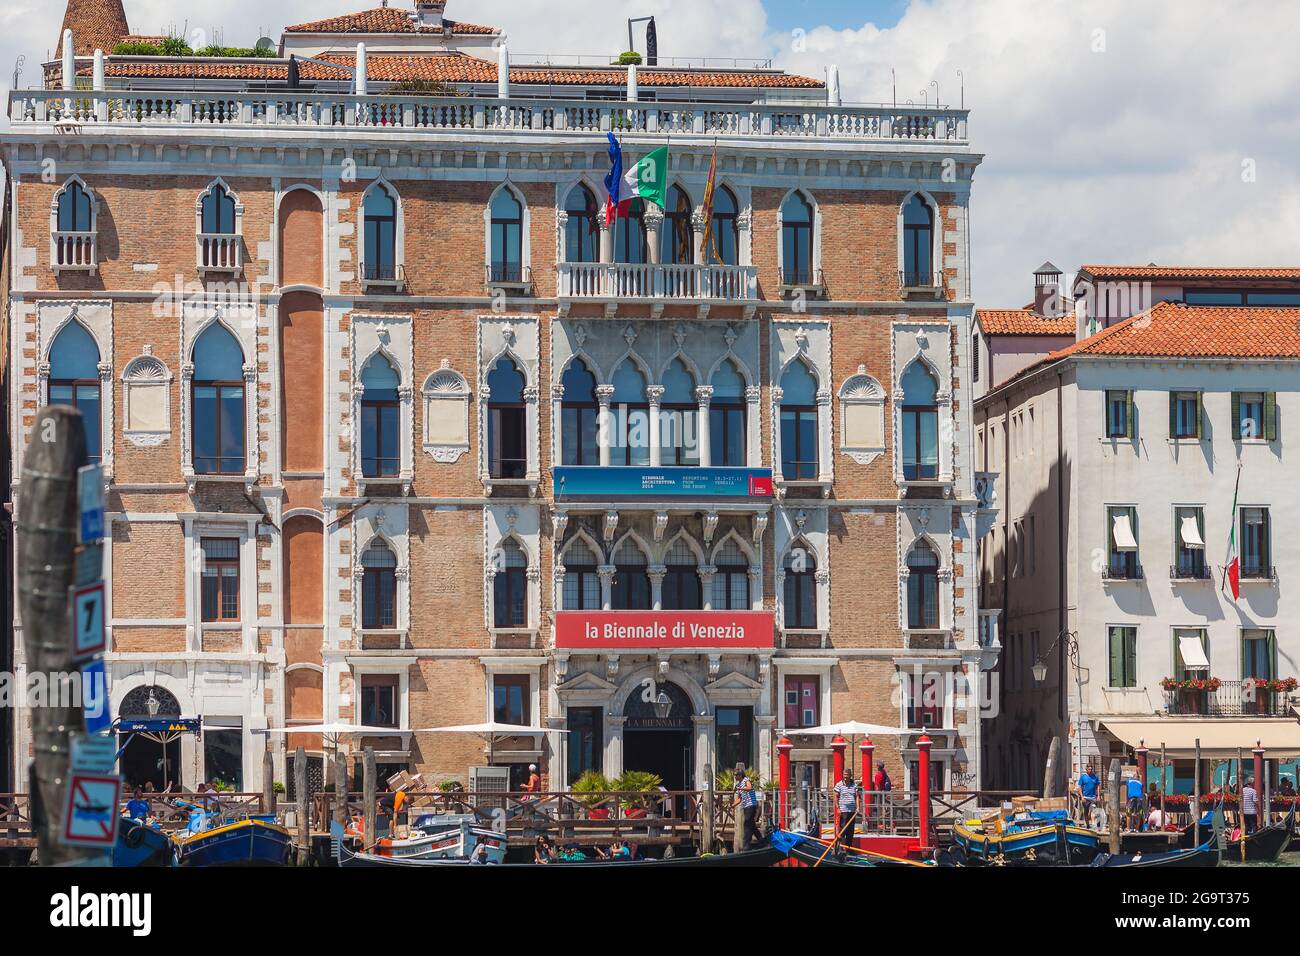 Venise, Italie - 15 juin 2016 la Biennale di Venezia dans le Palazzo CA' Giustininian-Morosini sur le Grand Canal, Venise, Italie. Banque D'Images